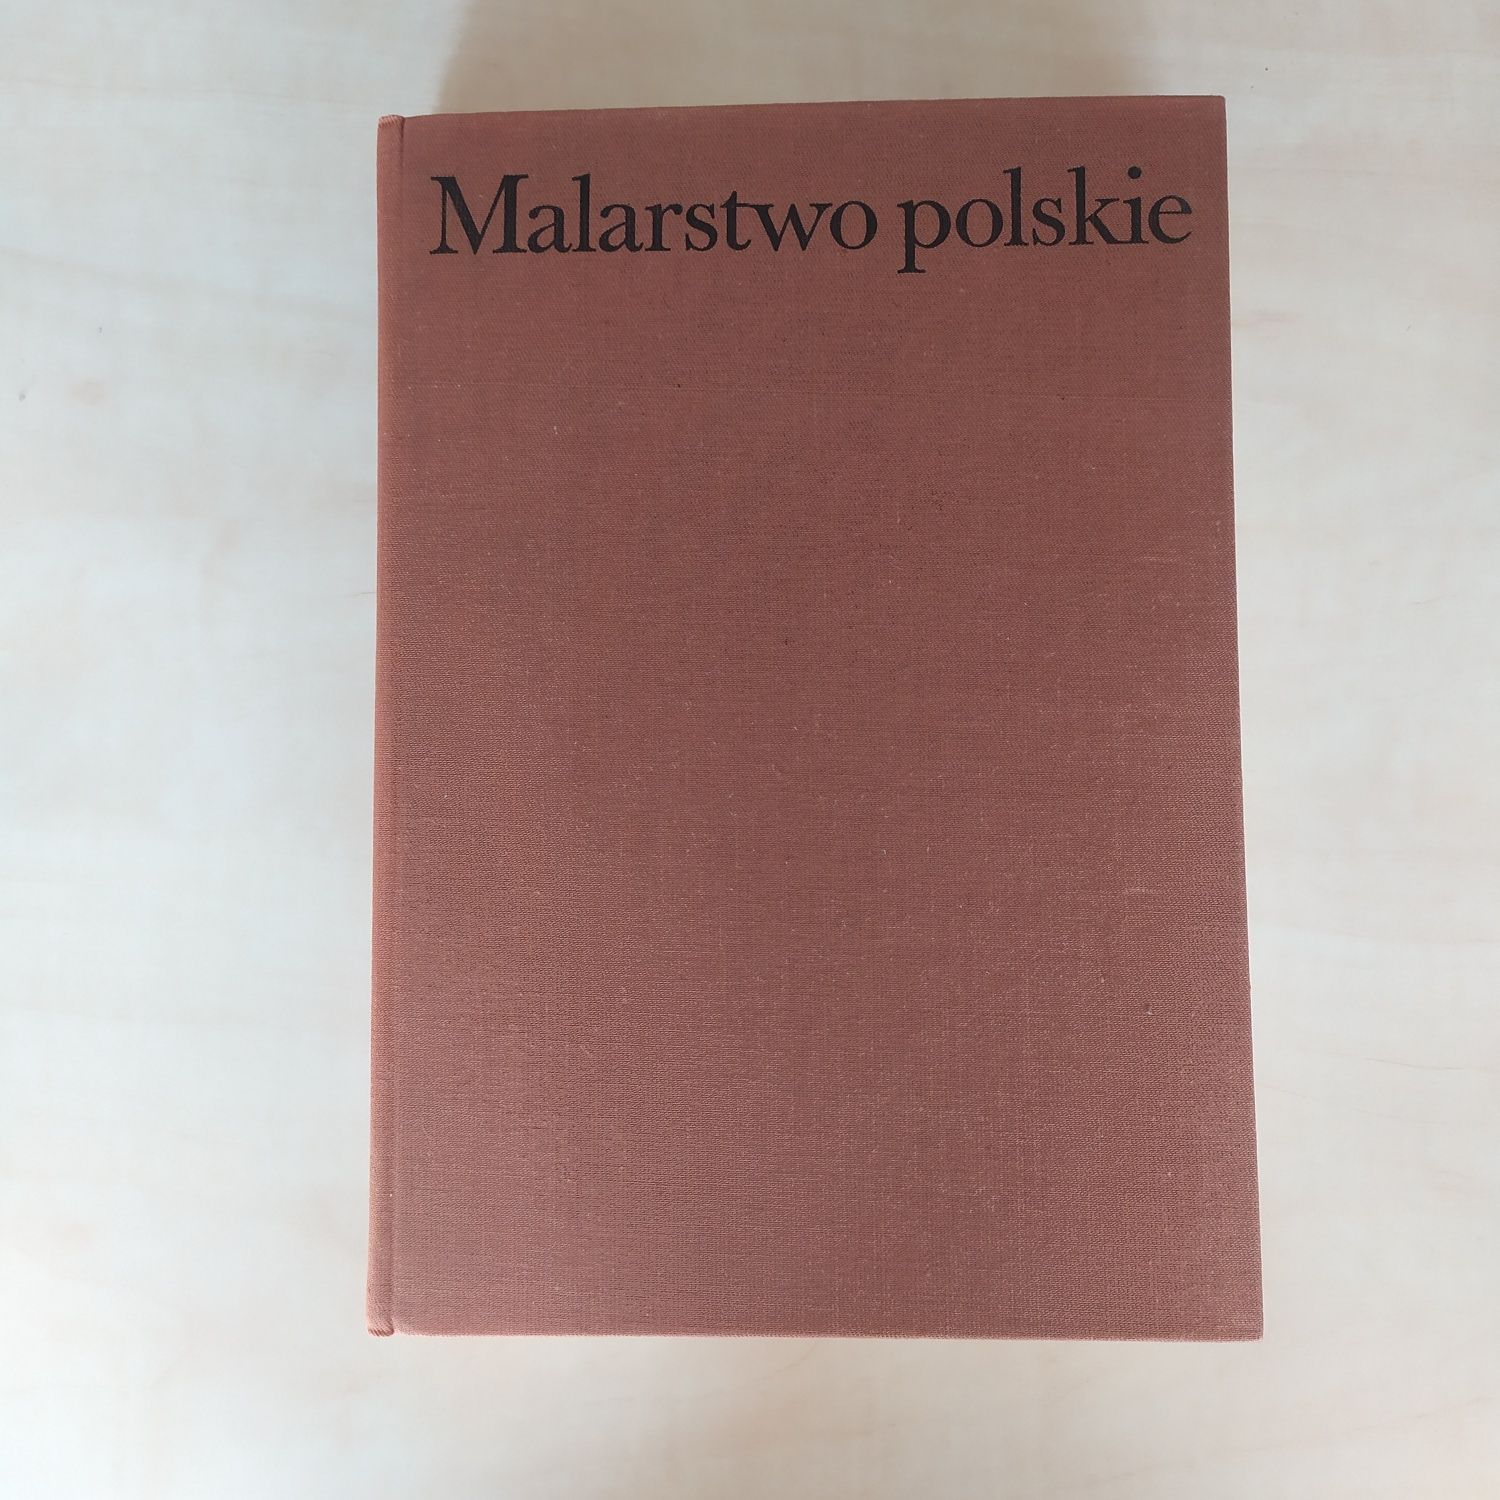 Malarstwo polskie Tadeusz Dobrowolski Ossolineum wydanie III 1989 rok